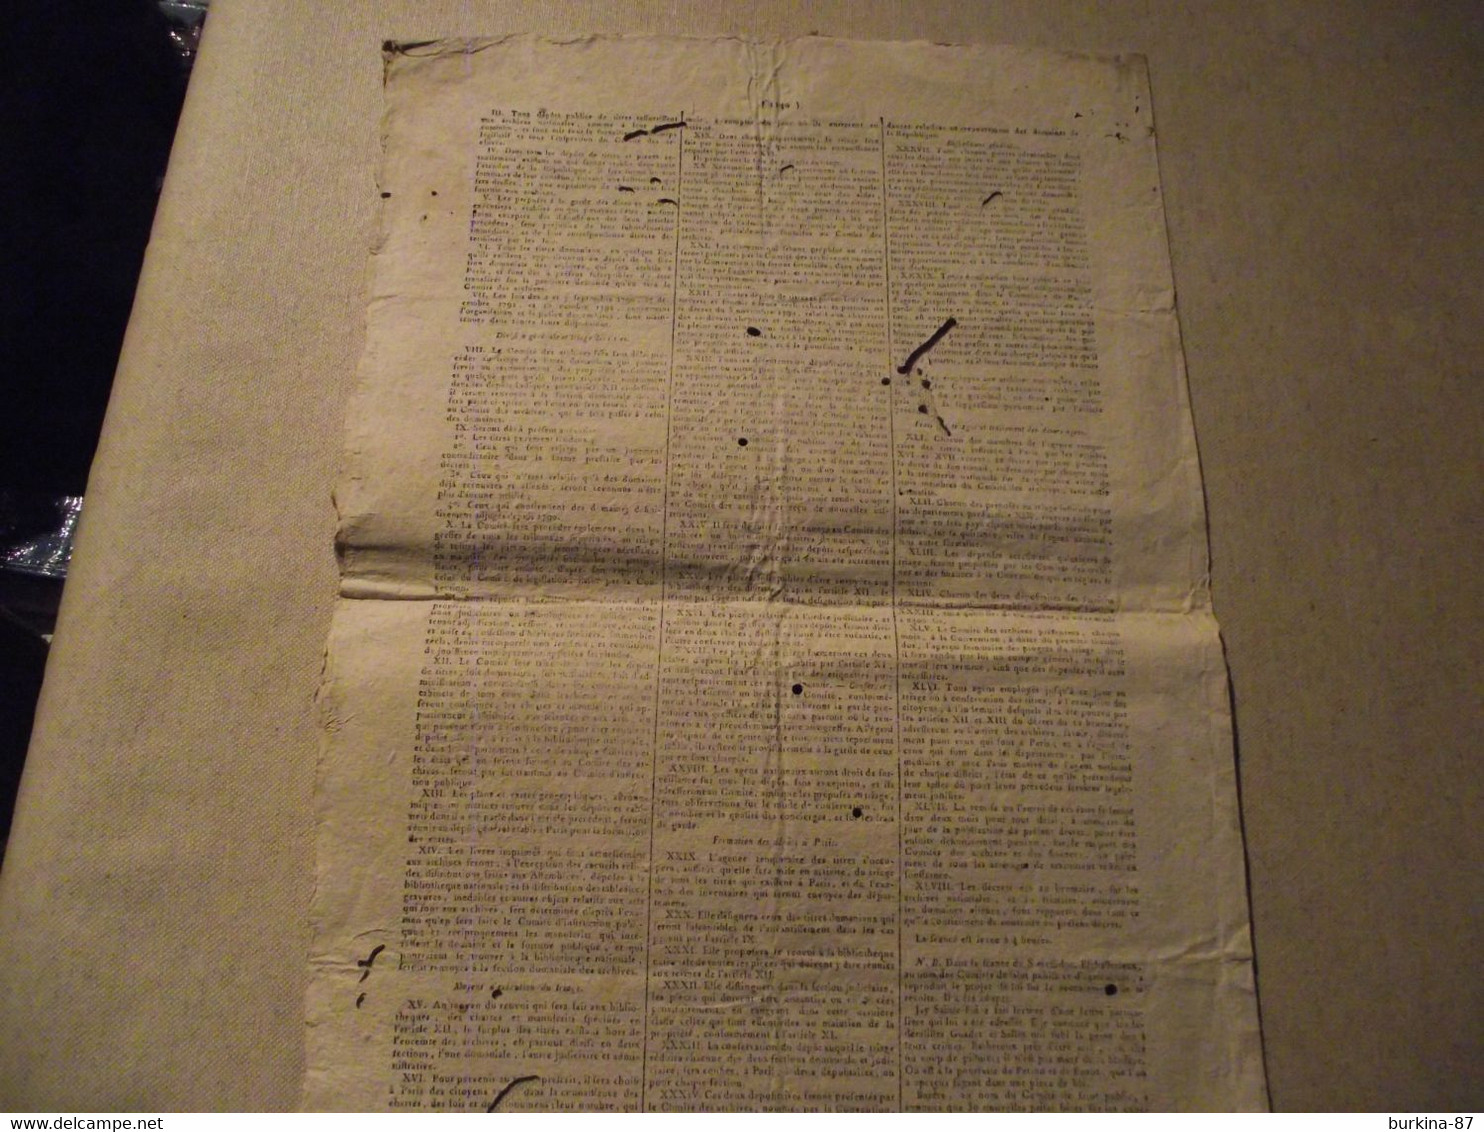 Gazette Nationale ou Le Moniteur Universel, 27 JUIN 1794, convention nationale, journal officiel, 9 messidor an 2